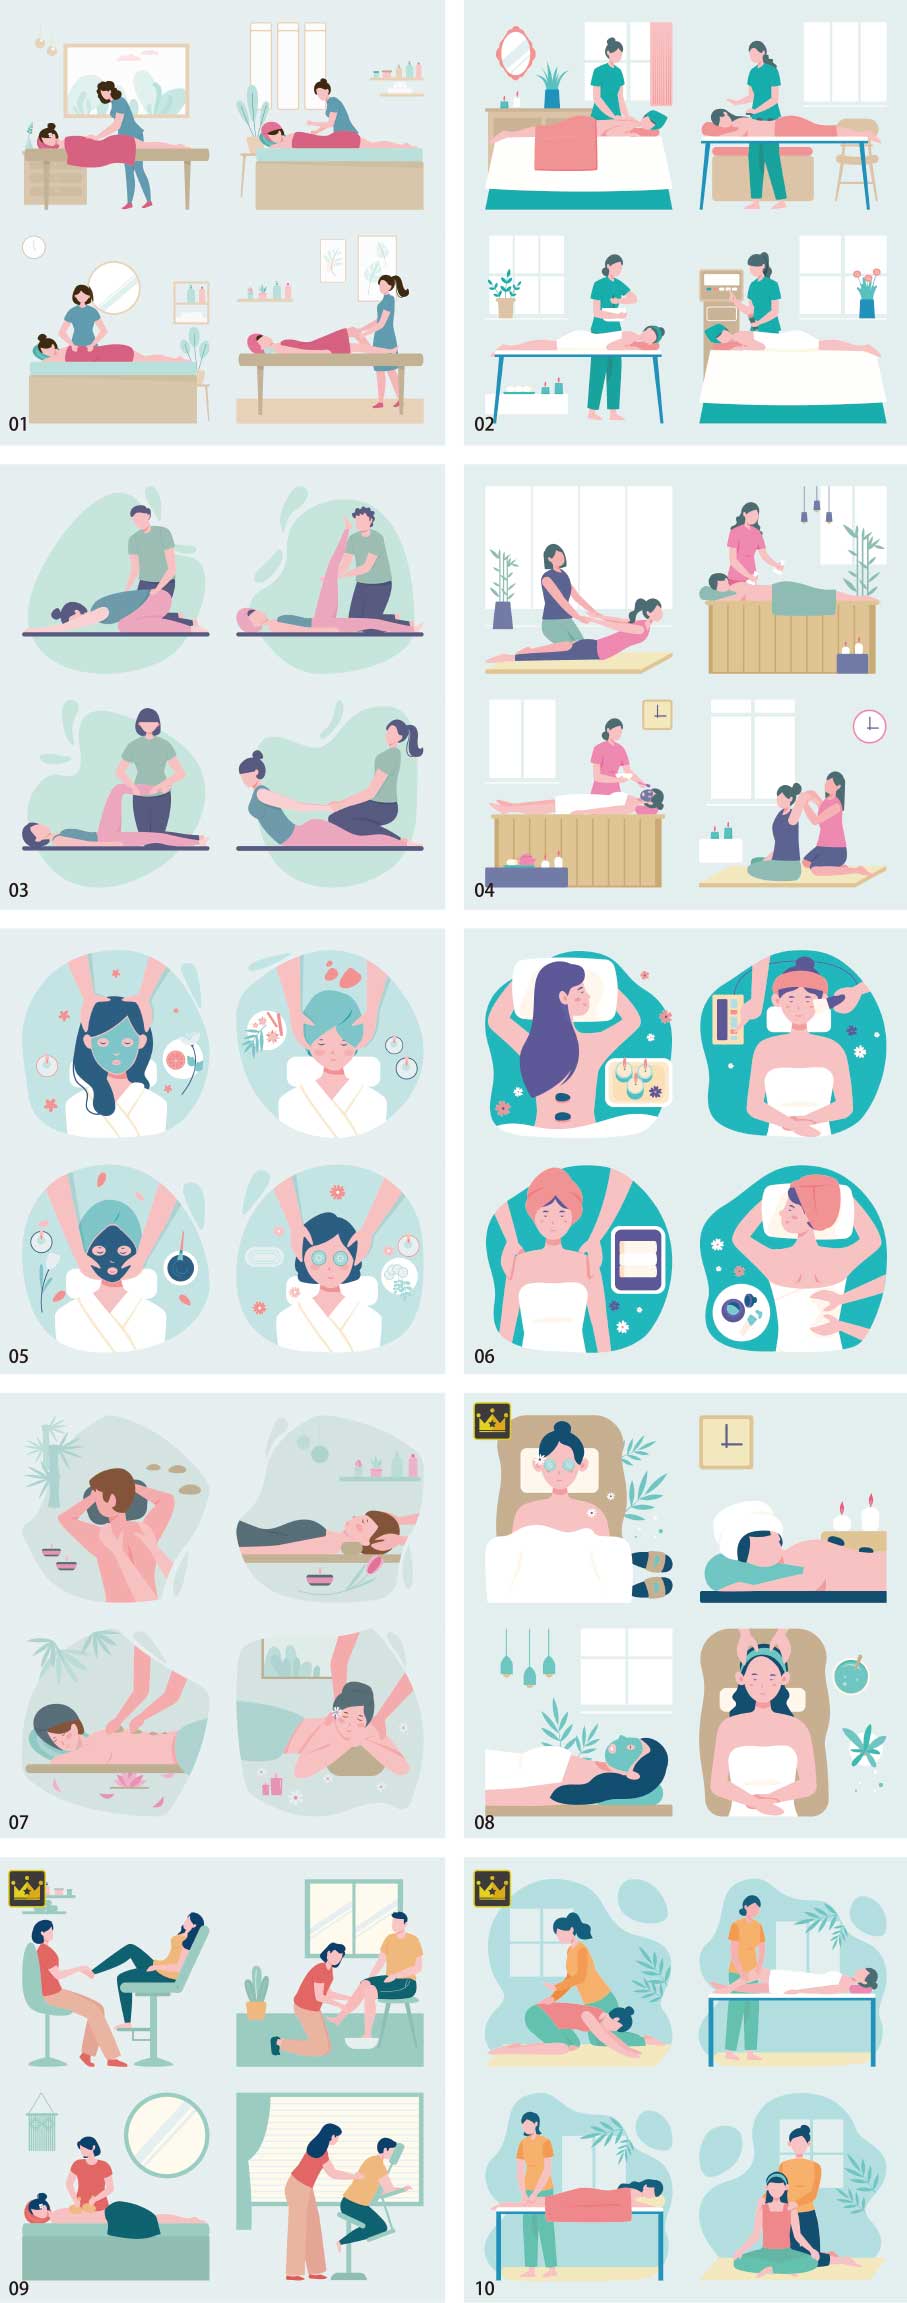 Massage therapist illustration collection